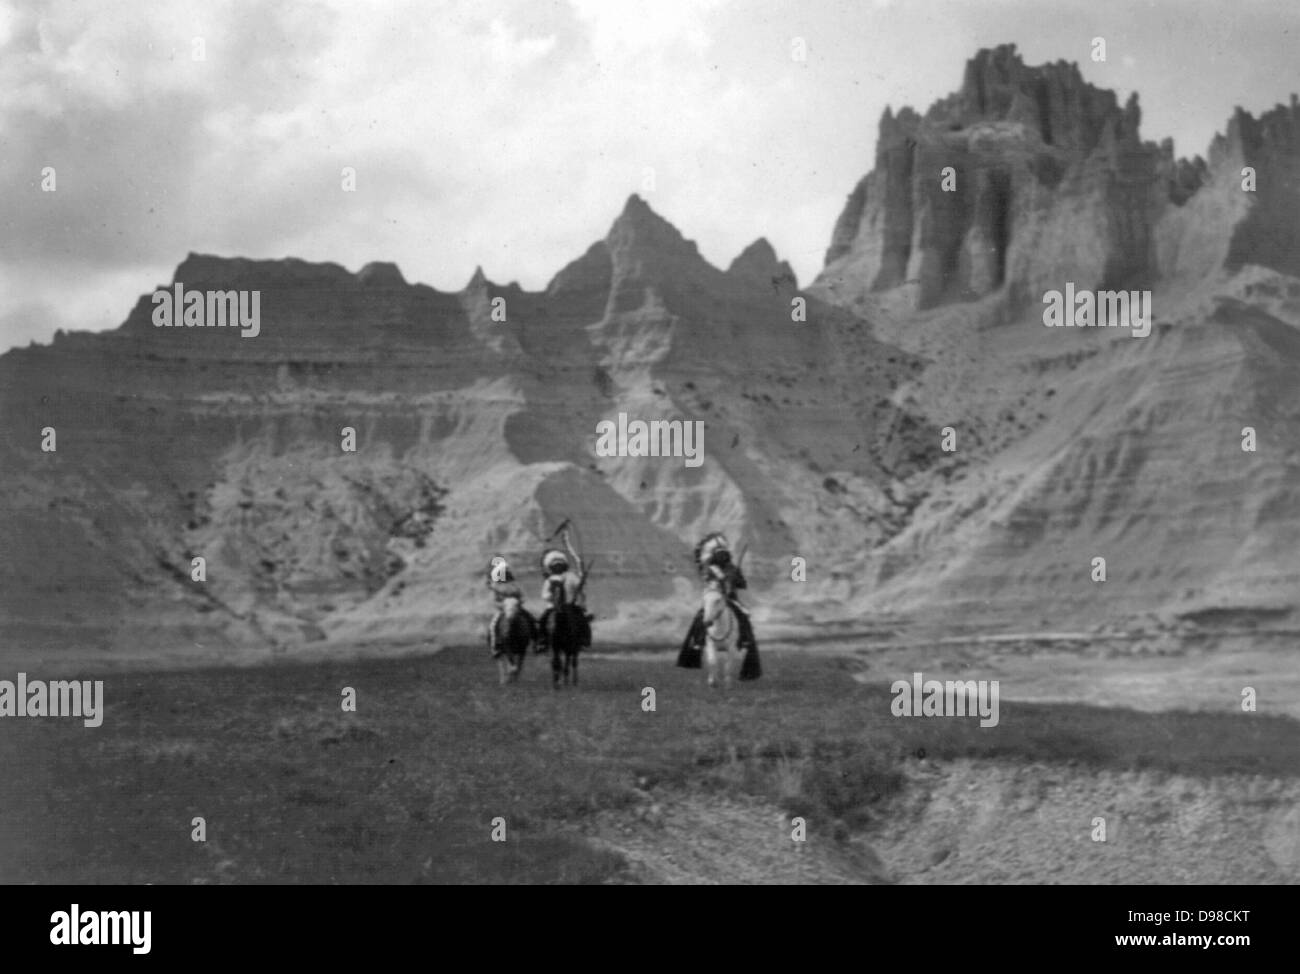 Trois Indiens à cheval, montagnes en backgrouand. c1905. Photographie, Edward Curtis (1868-1952). Banque D'Images